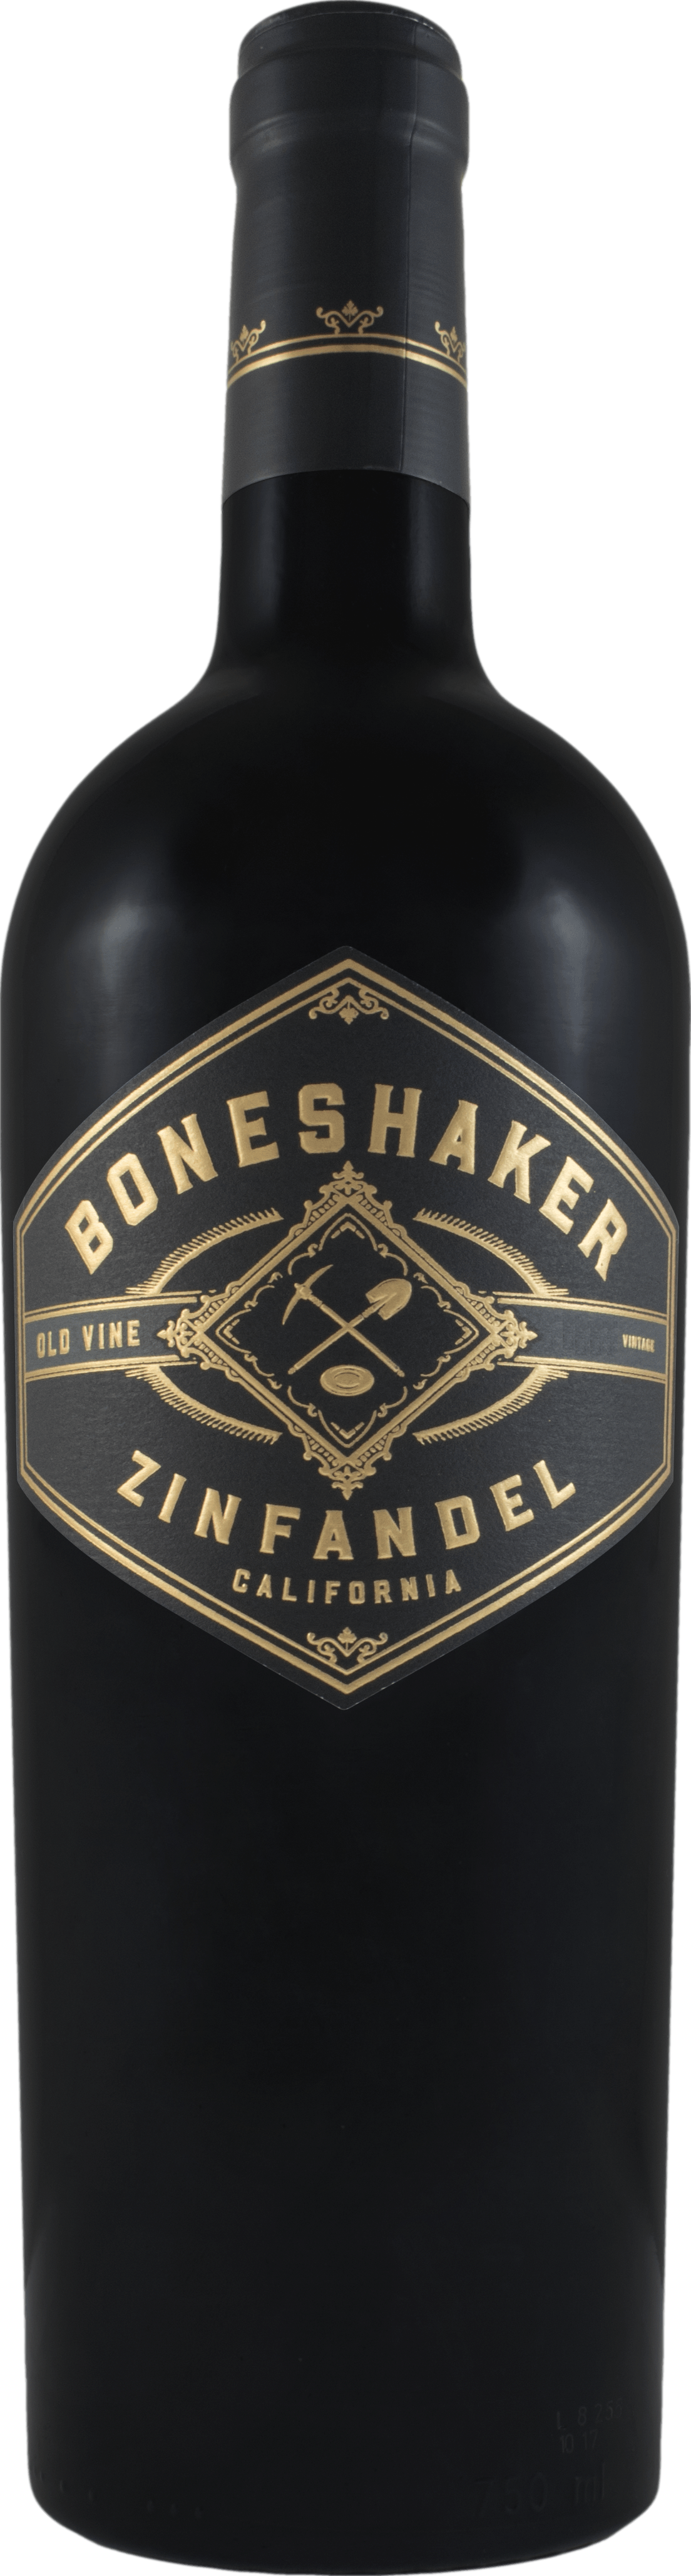 Boneshaker Zinfandel 2020